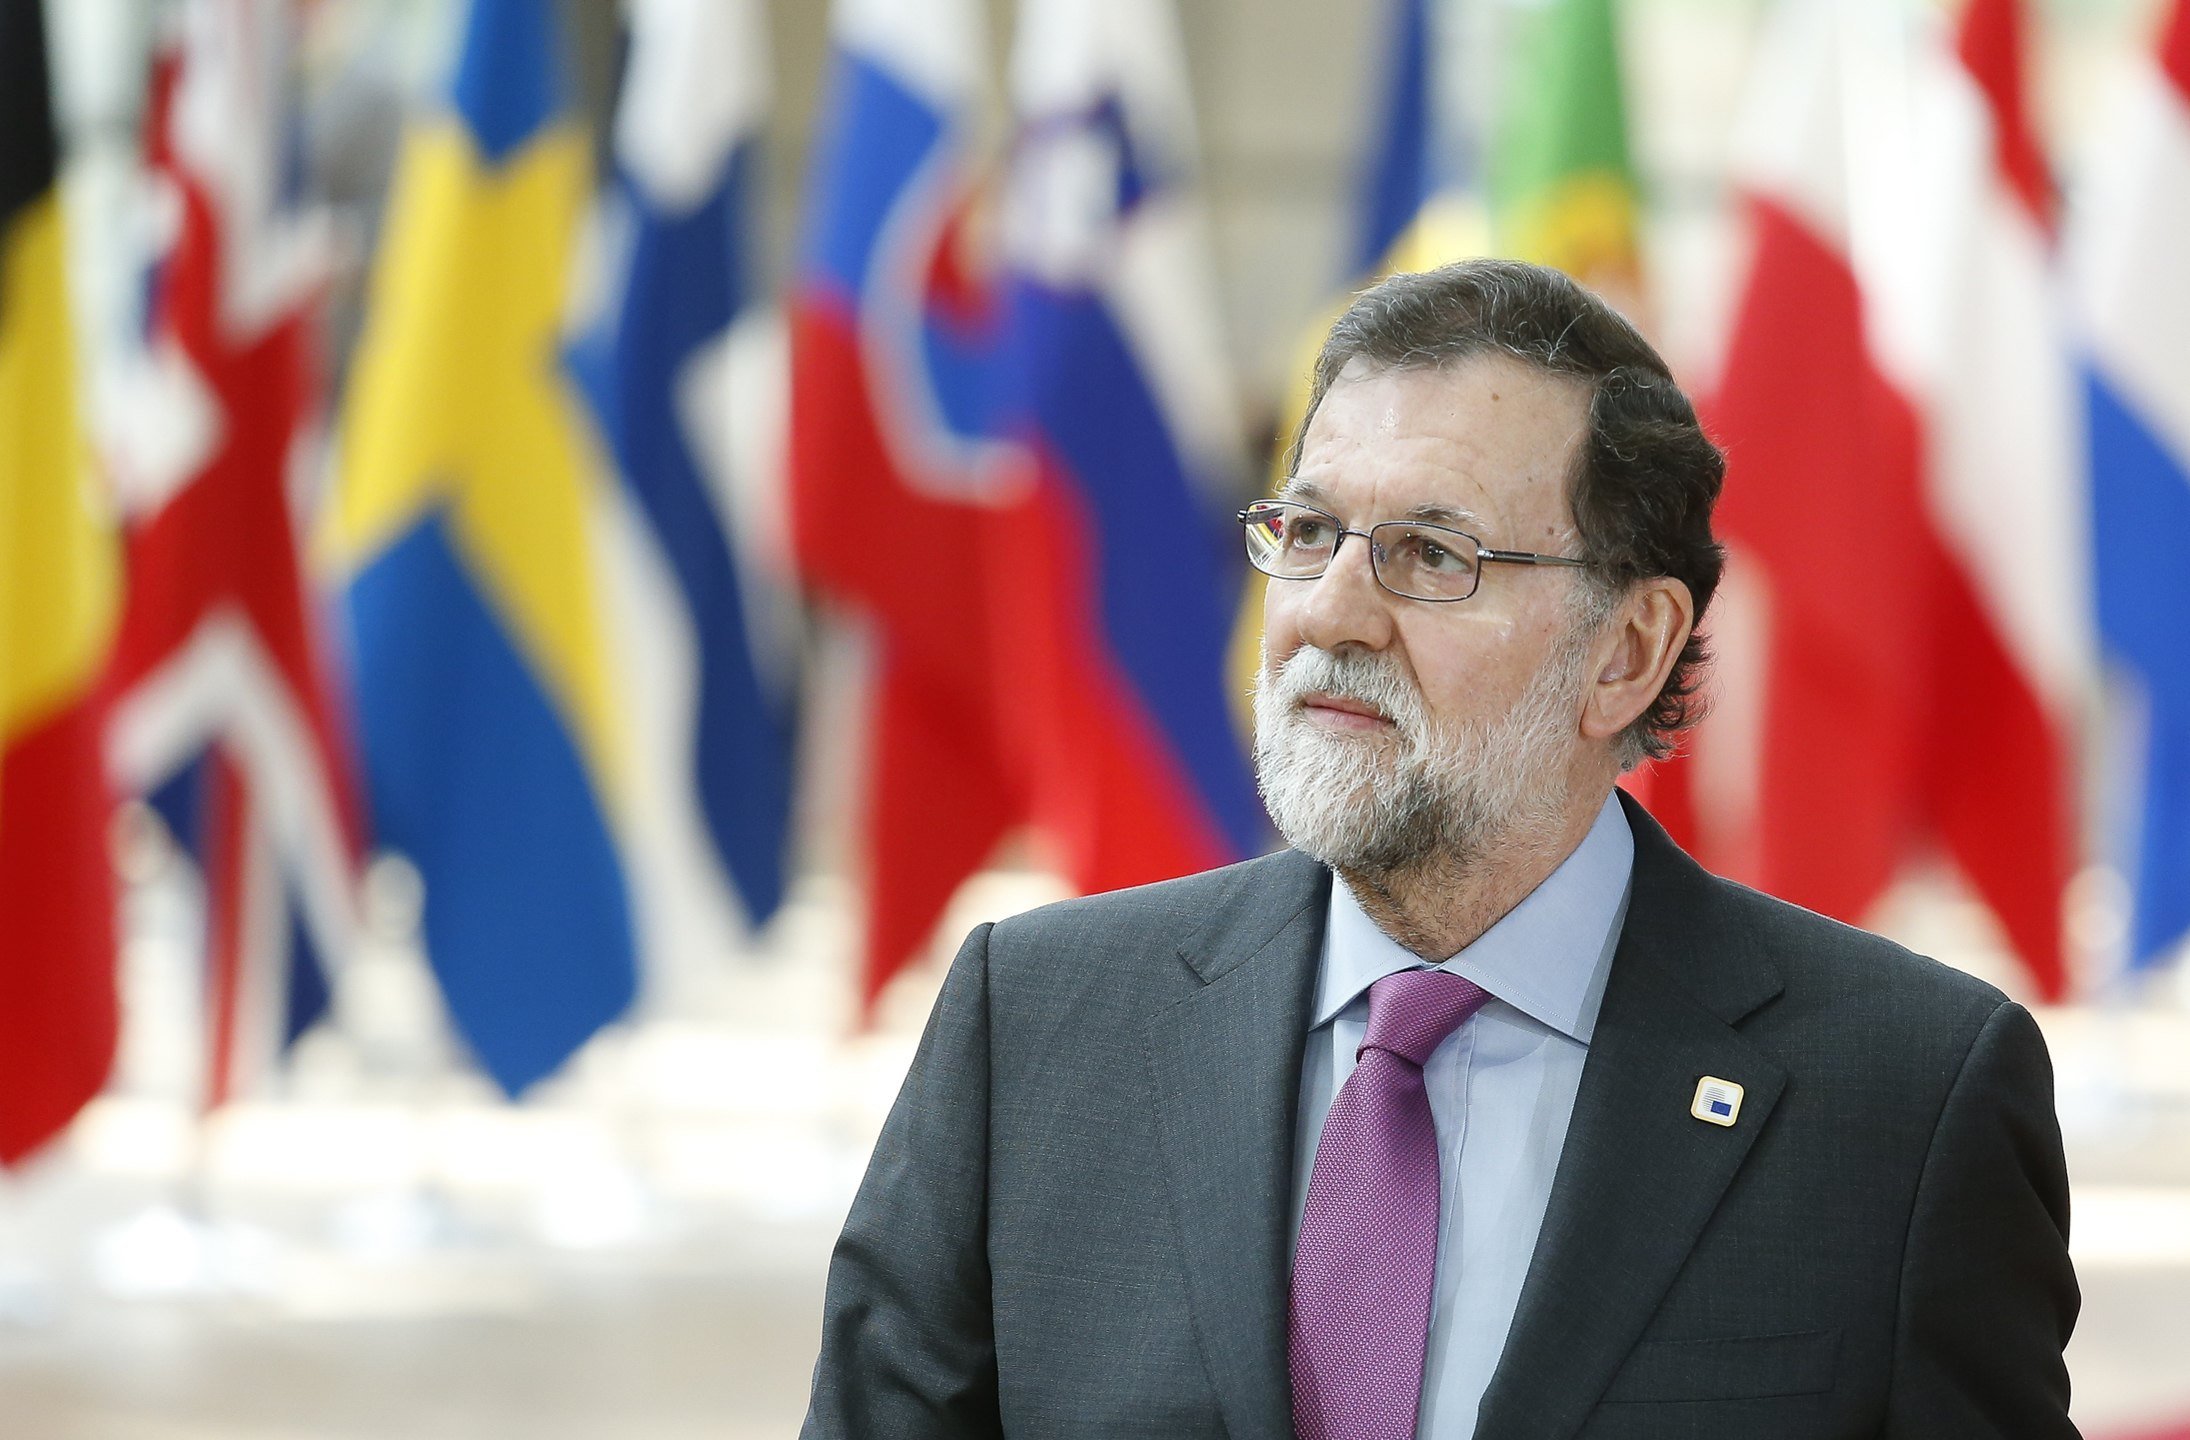 Rajoy s'enroca: "Ni vull ni puc accedir a la petició de referèndum"